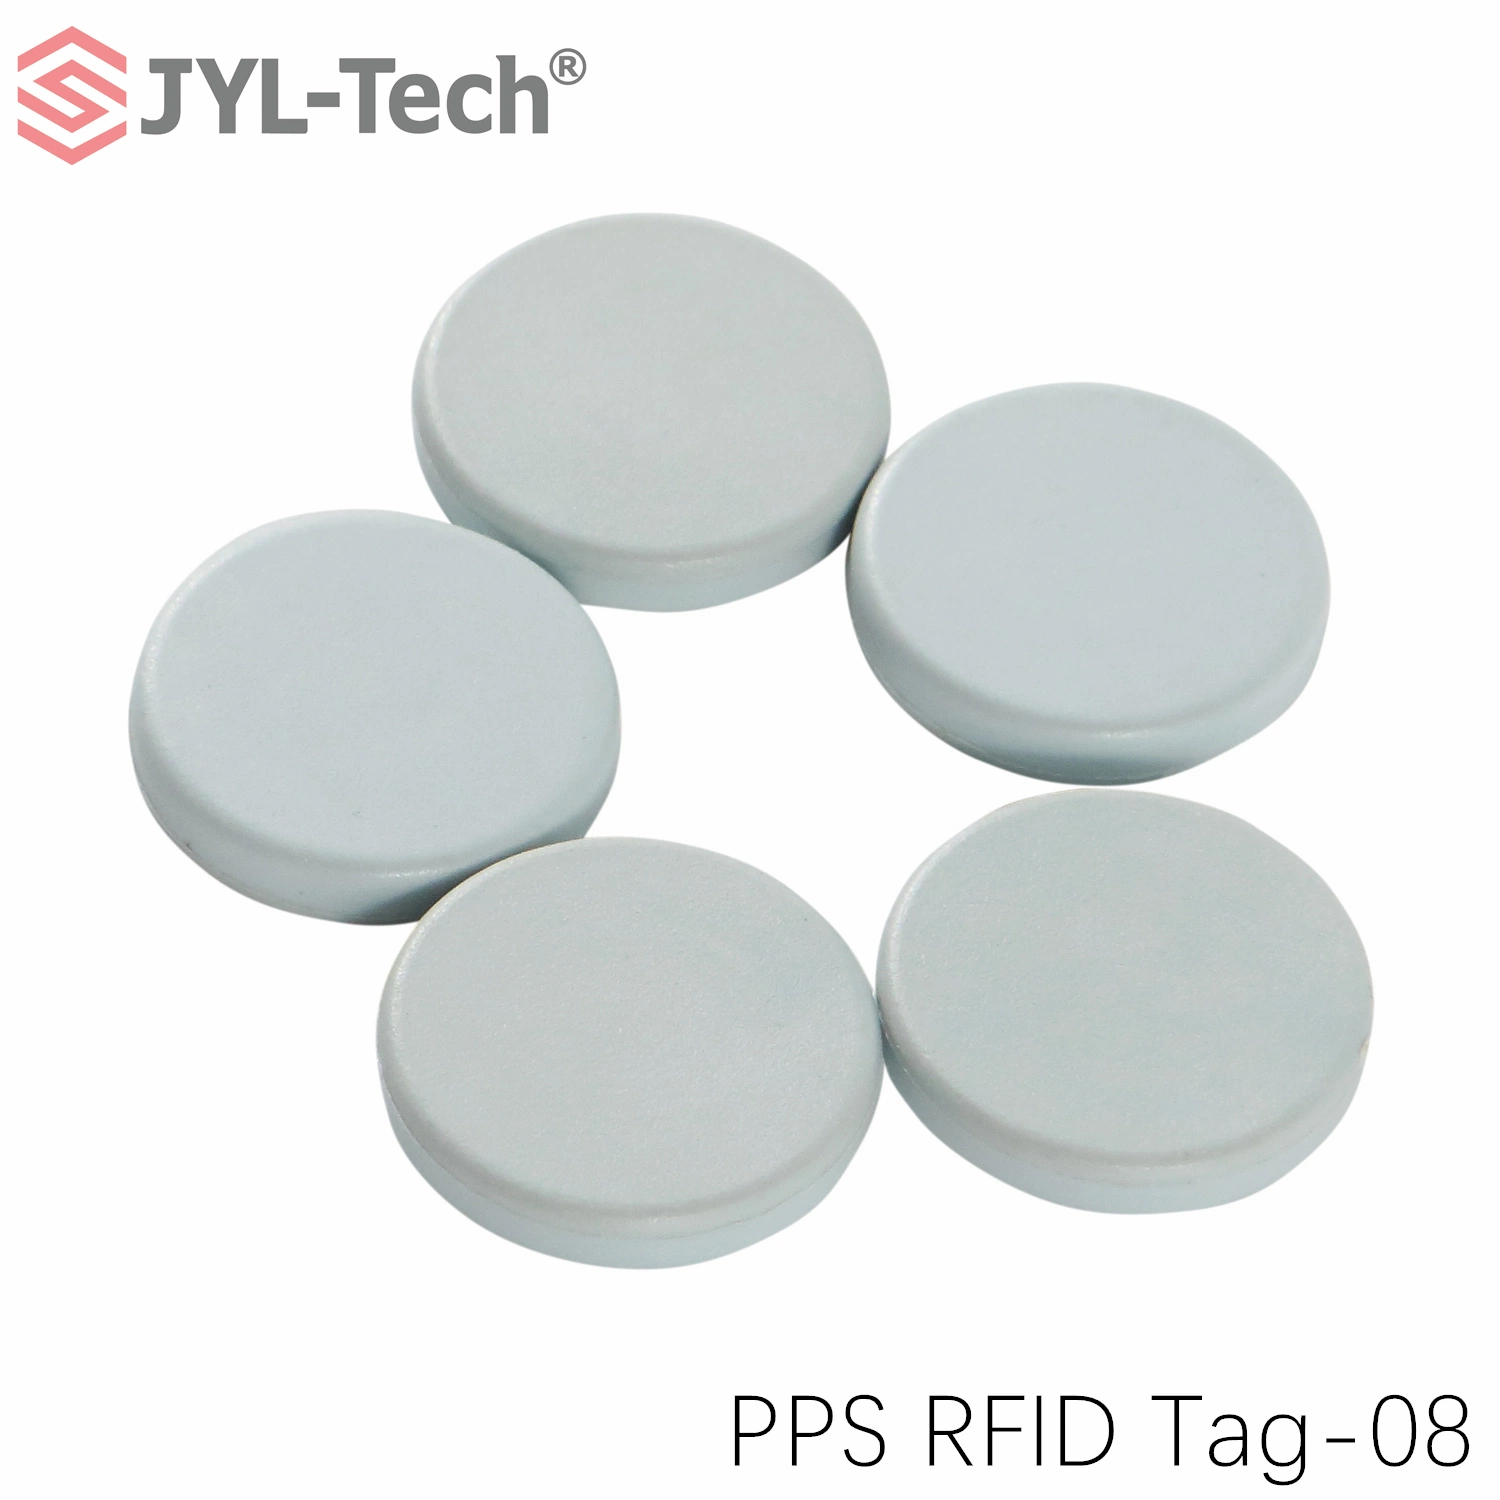 Customizable PPS Long Range UHF RFID Laundry Tag